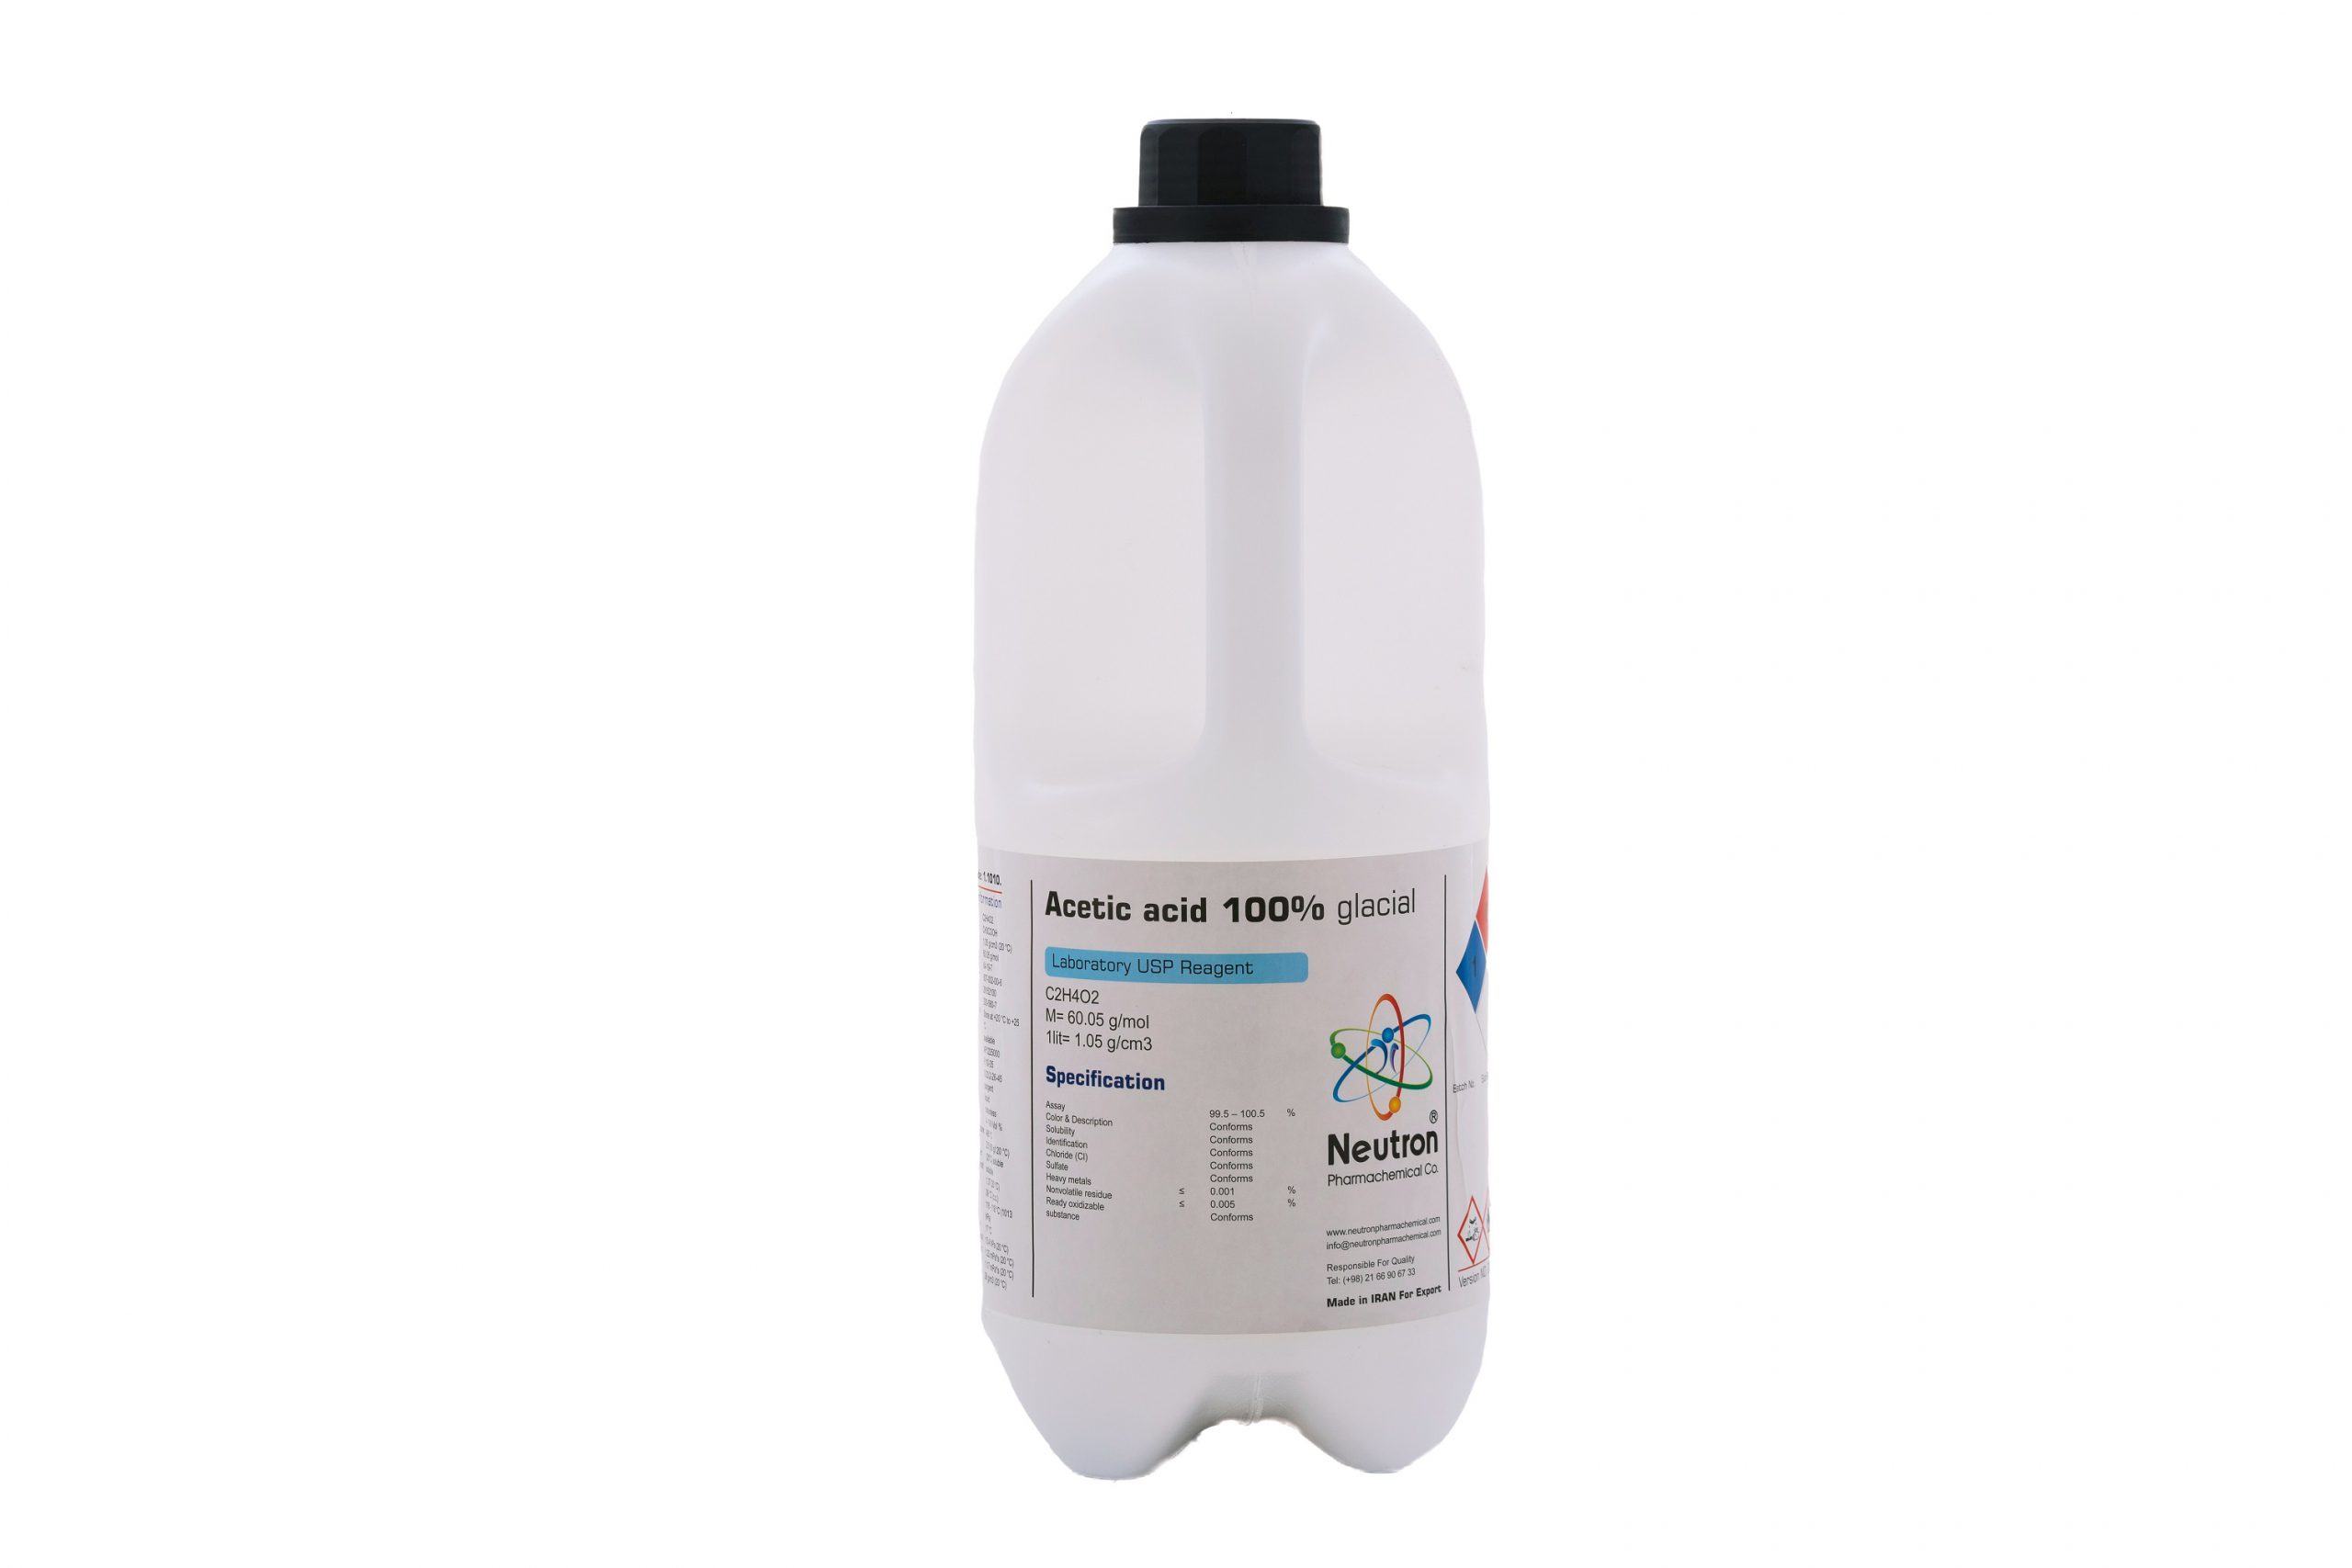 اسید استیک گلاشیال 100 درصد 2.5 لیتری بطری پلاستیکی گرید USP، شیمی دارویی نوترون